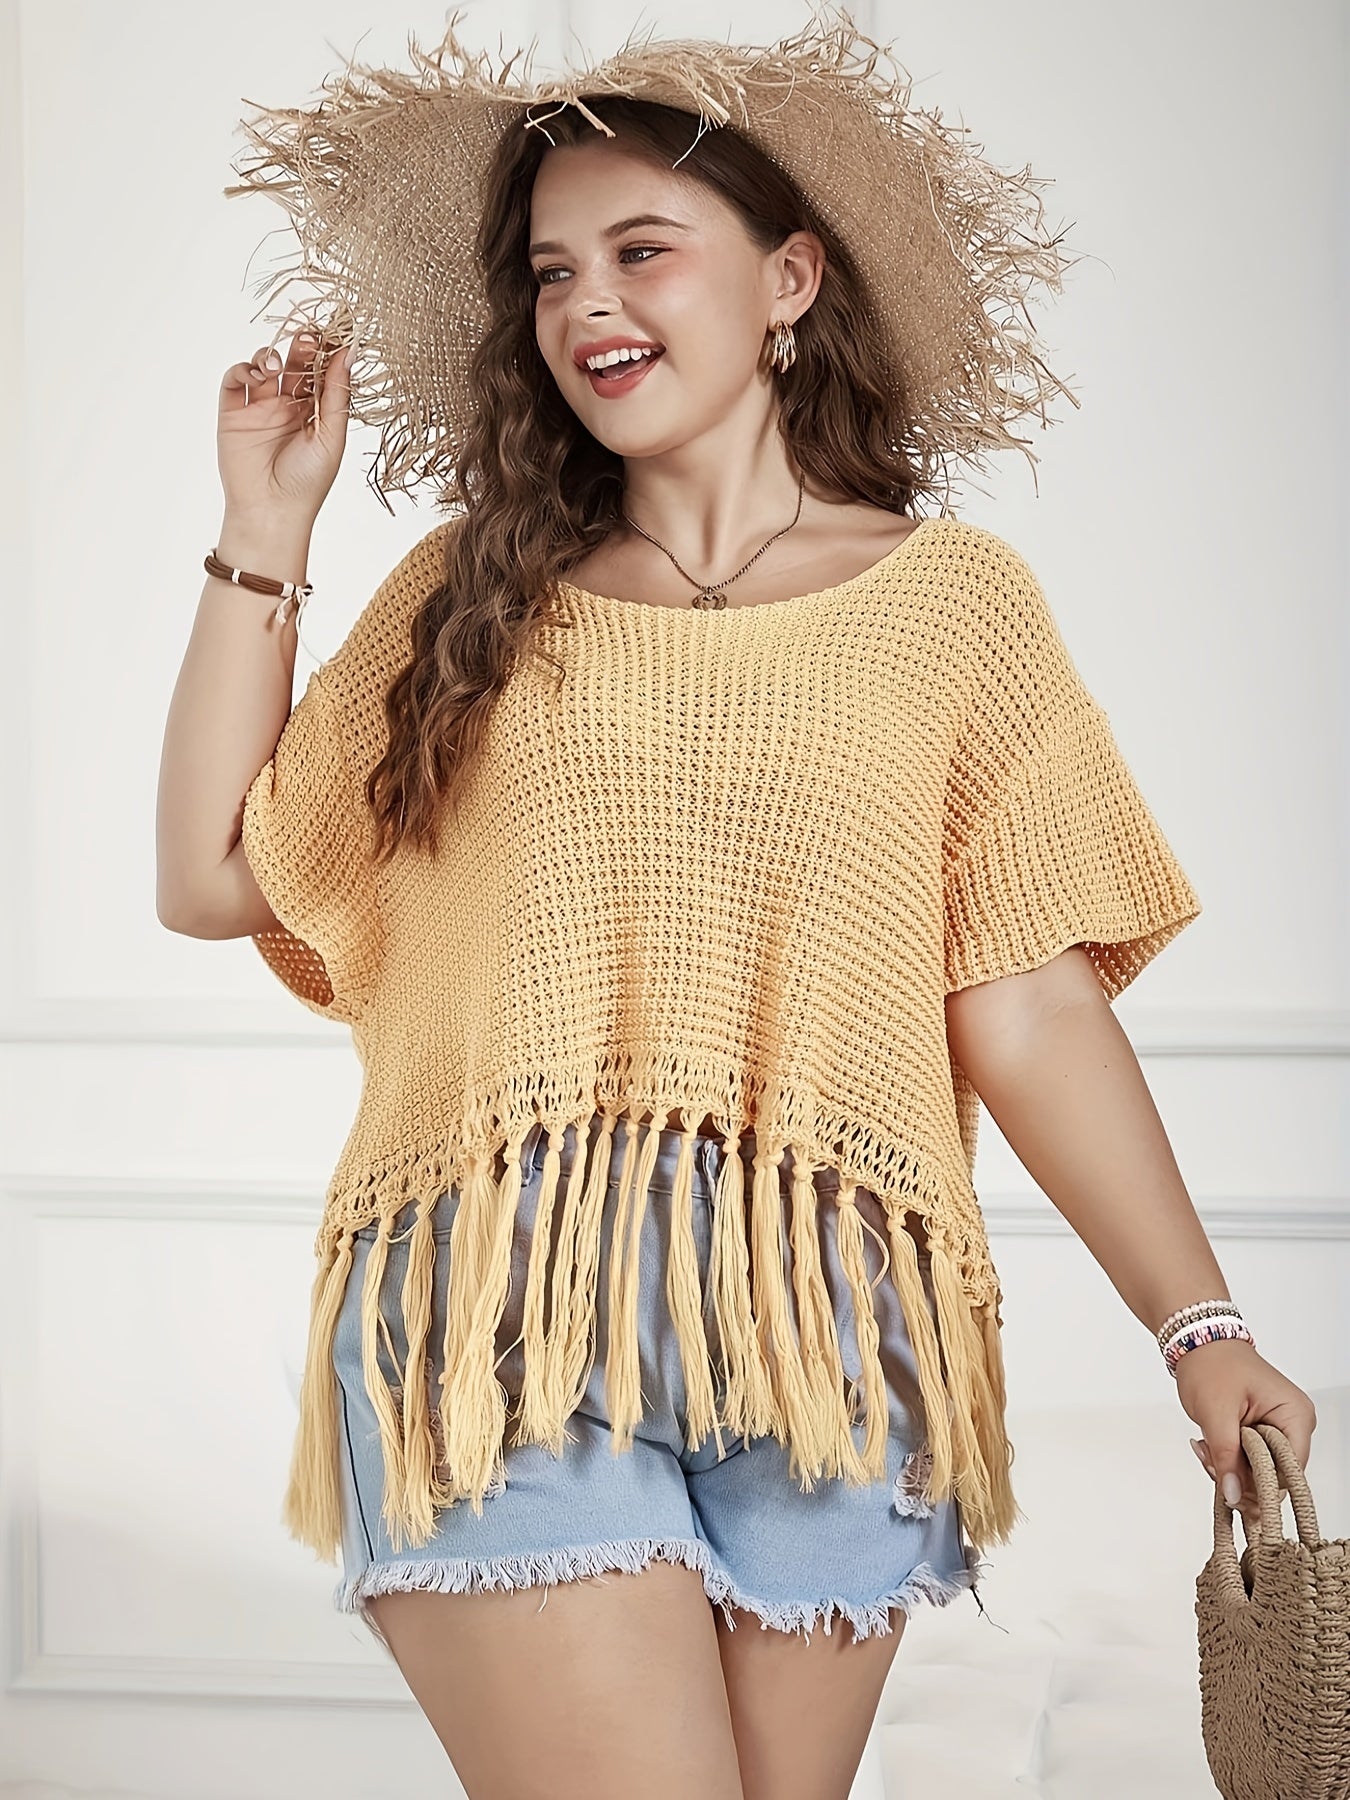 Antmvs Plus Size Vacay Sweater, Women's Plus Solid Waffle Crochet Tassel Trim Short Sleeve Crop Top